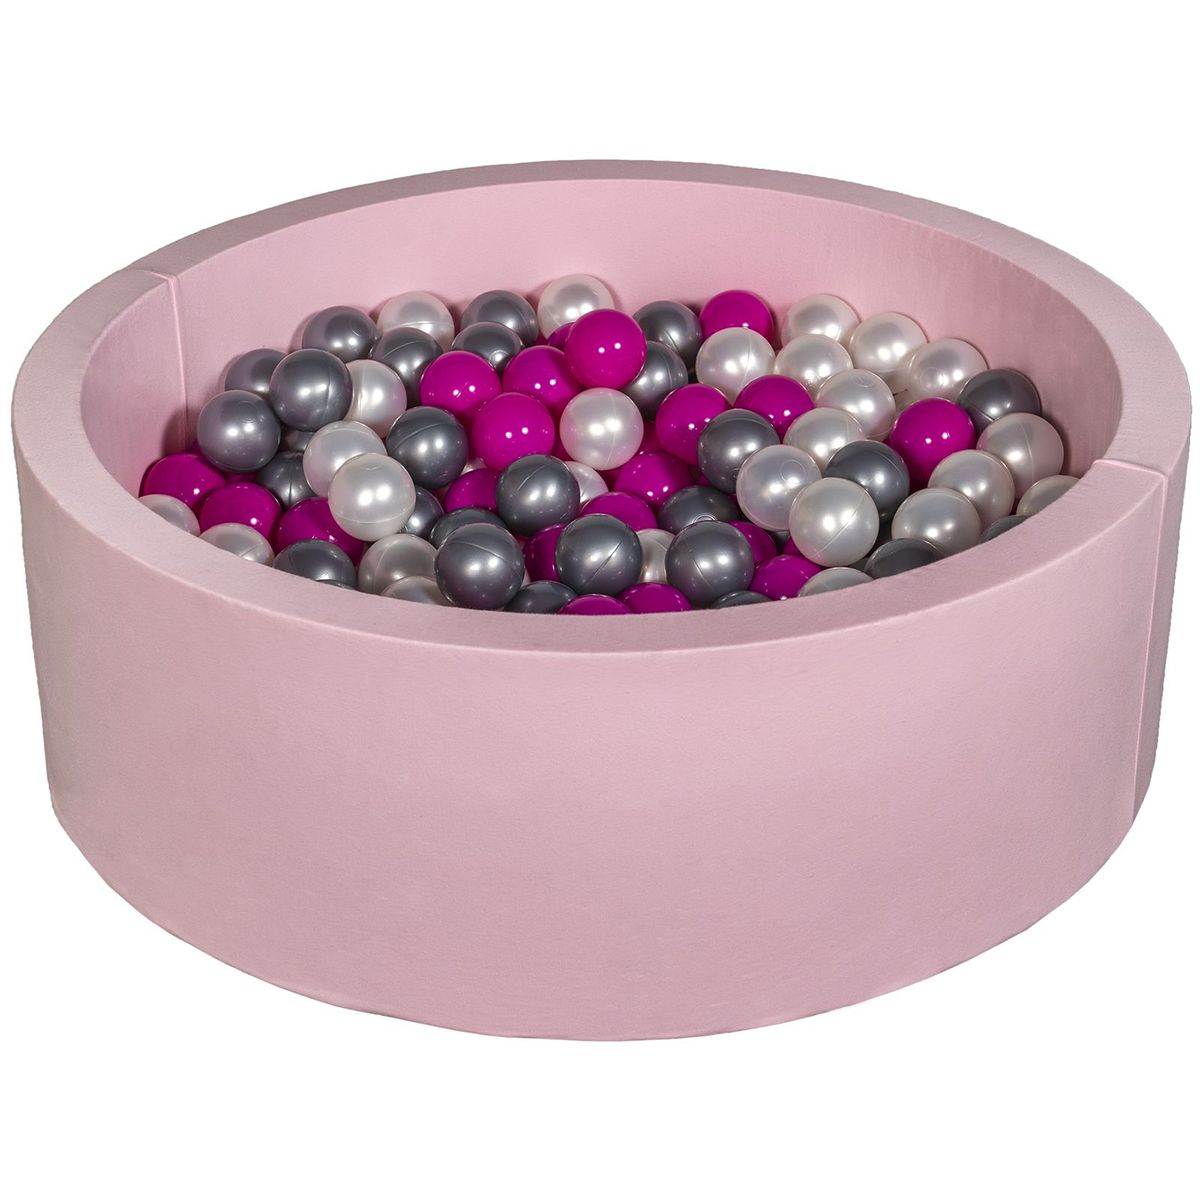  Piscine à balles Aire de jeu + 300 balles rose perle, rose, argent